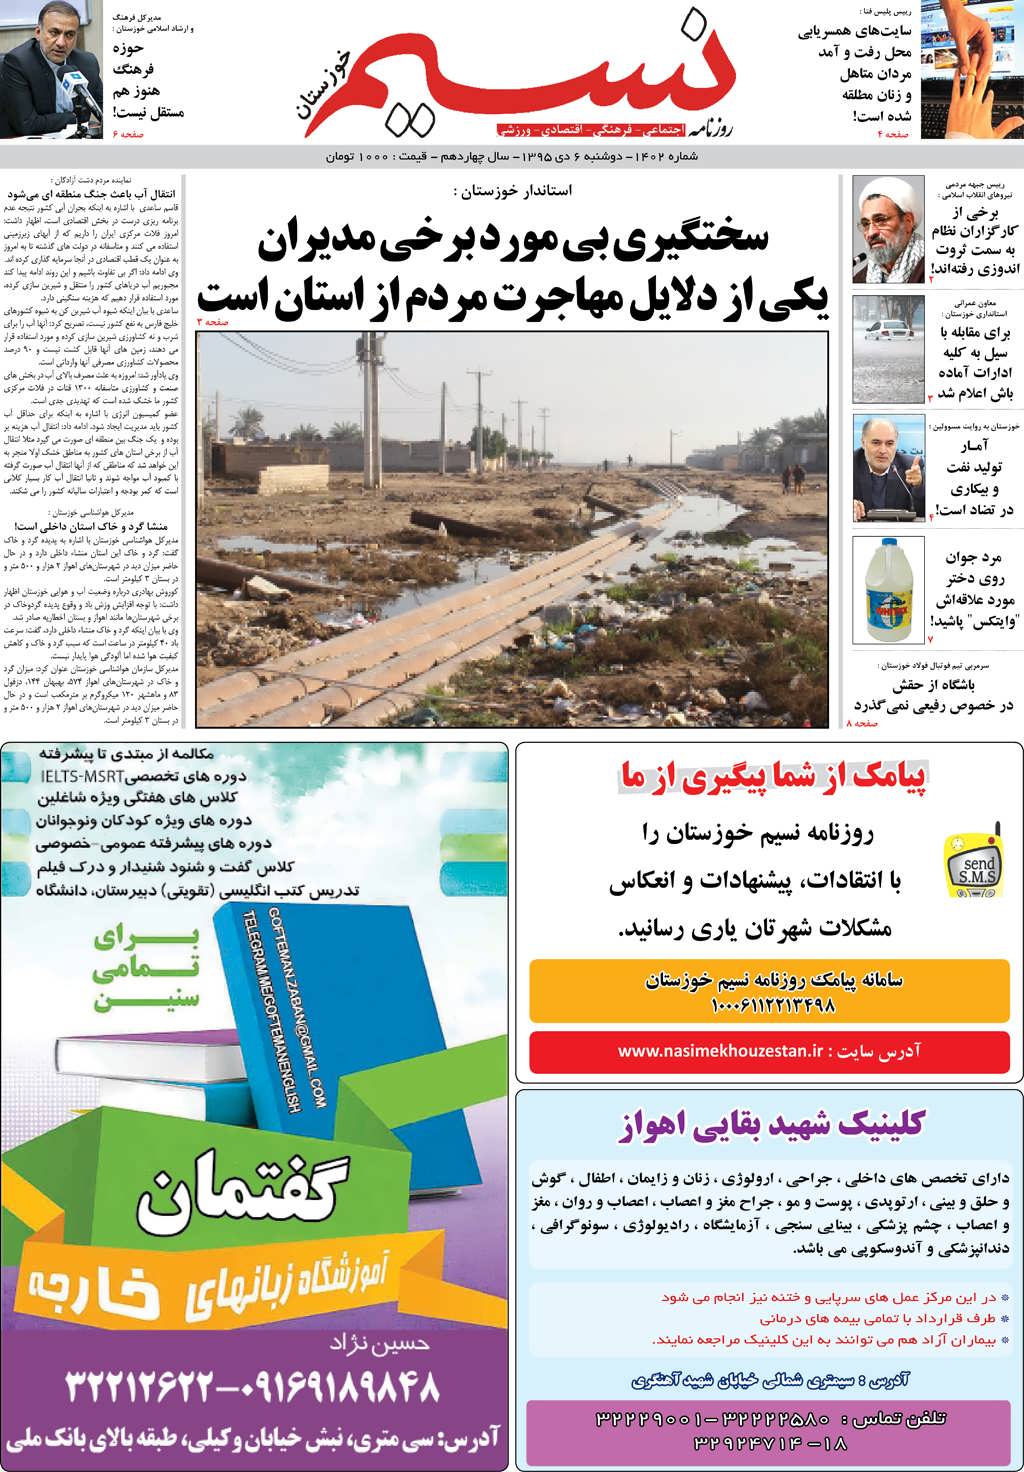 صفحه اصلی روزنامه نسیم شماره 1402